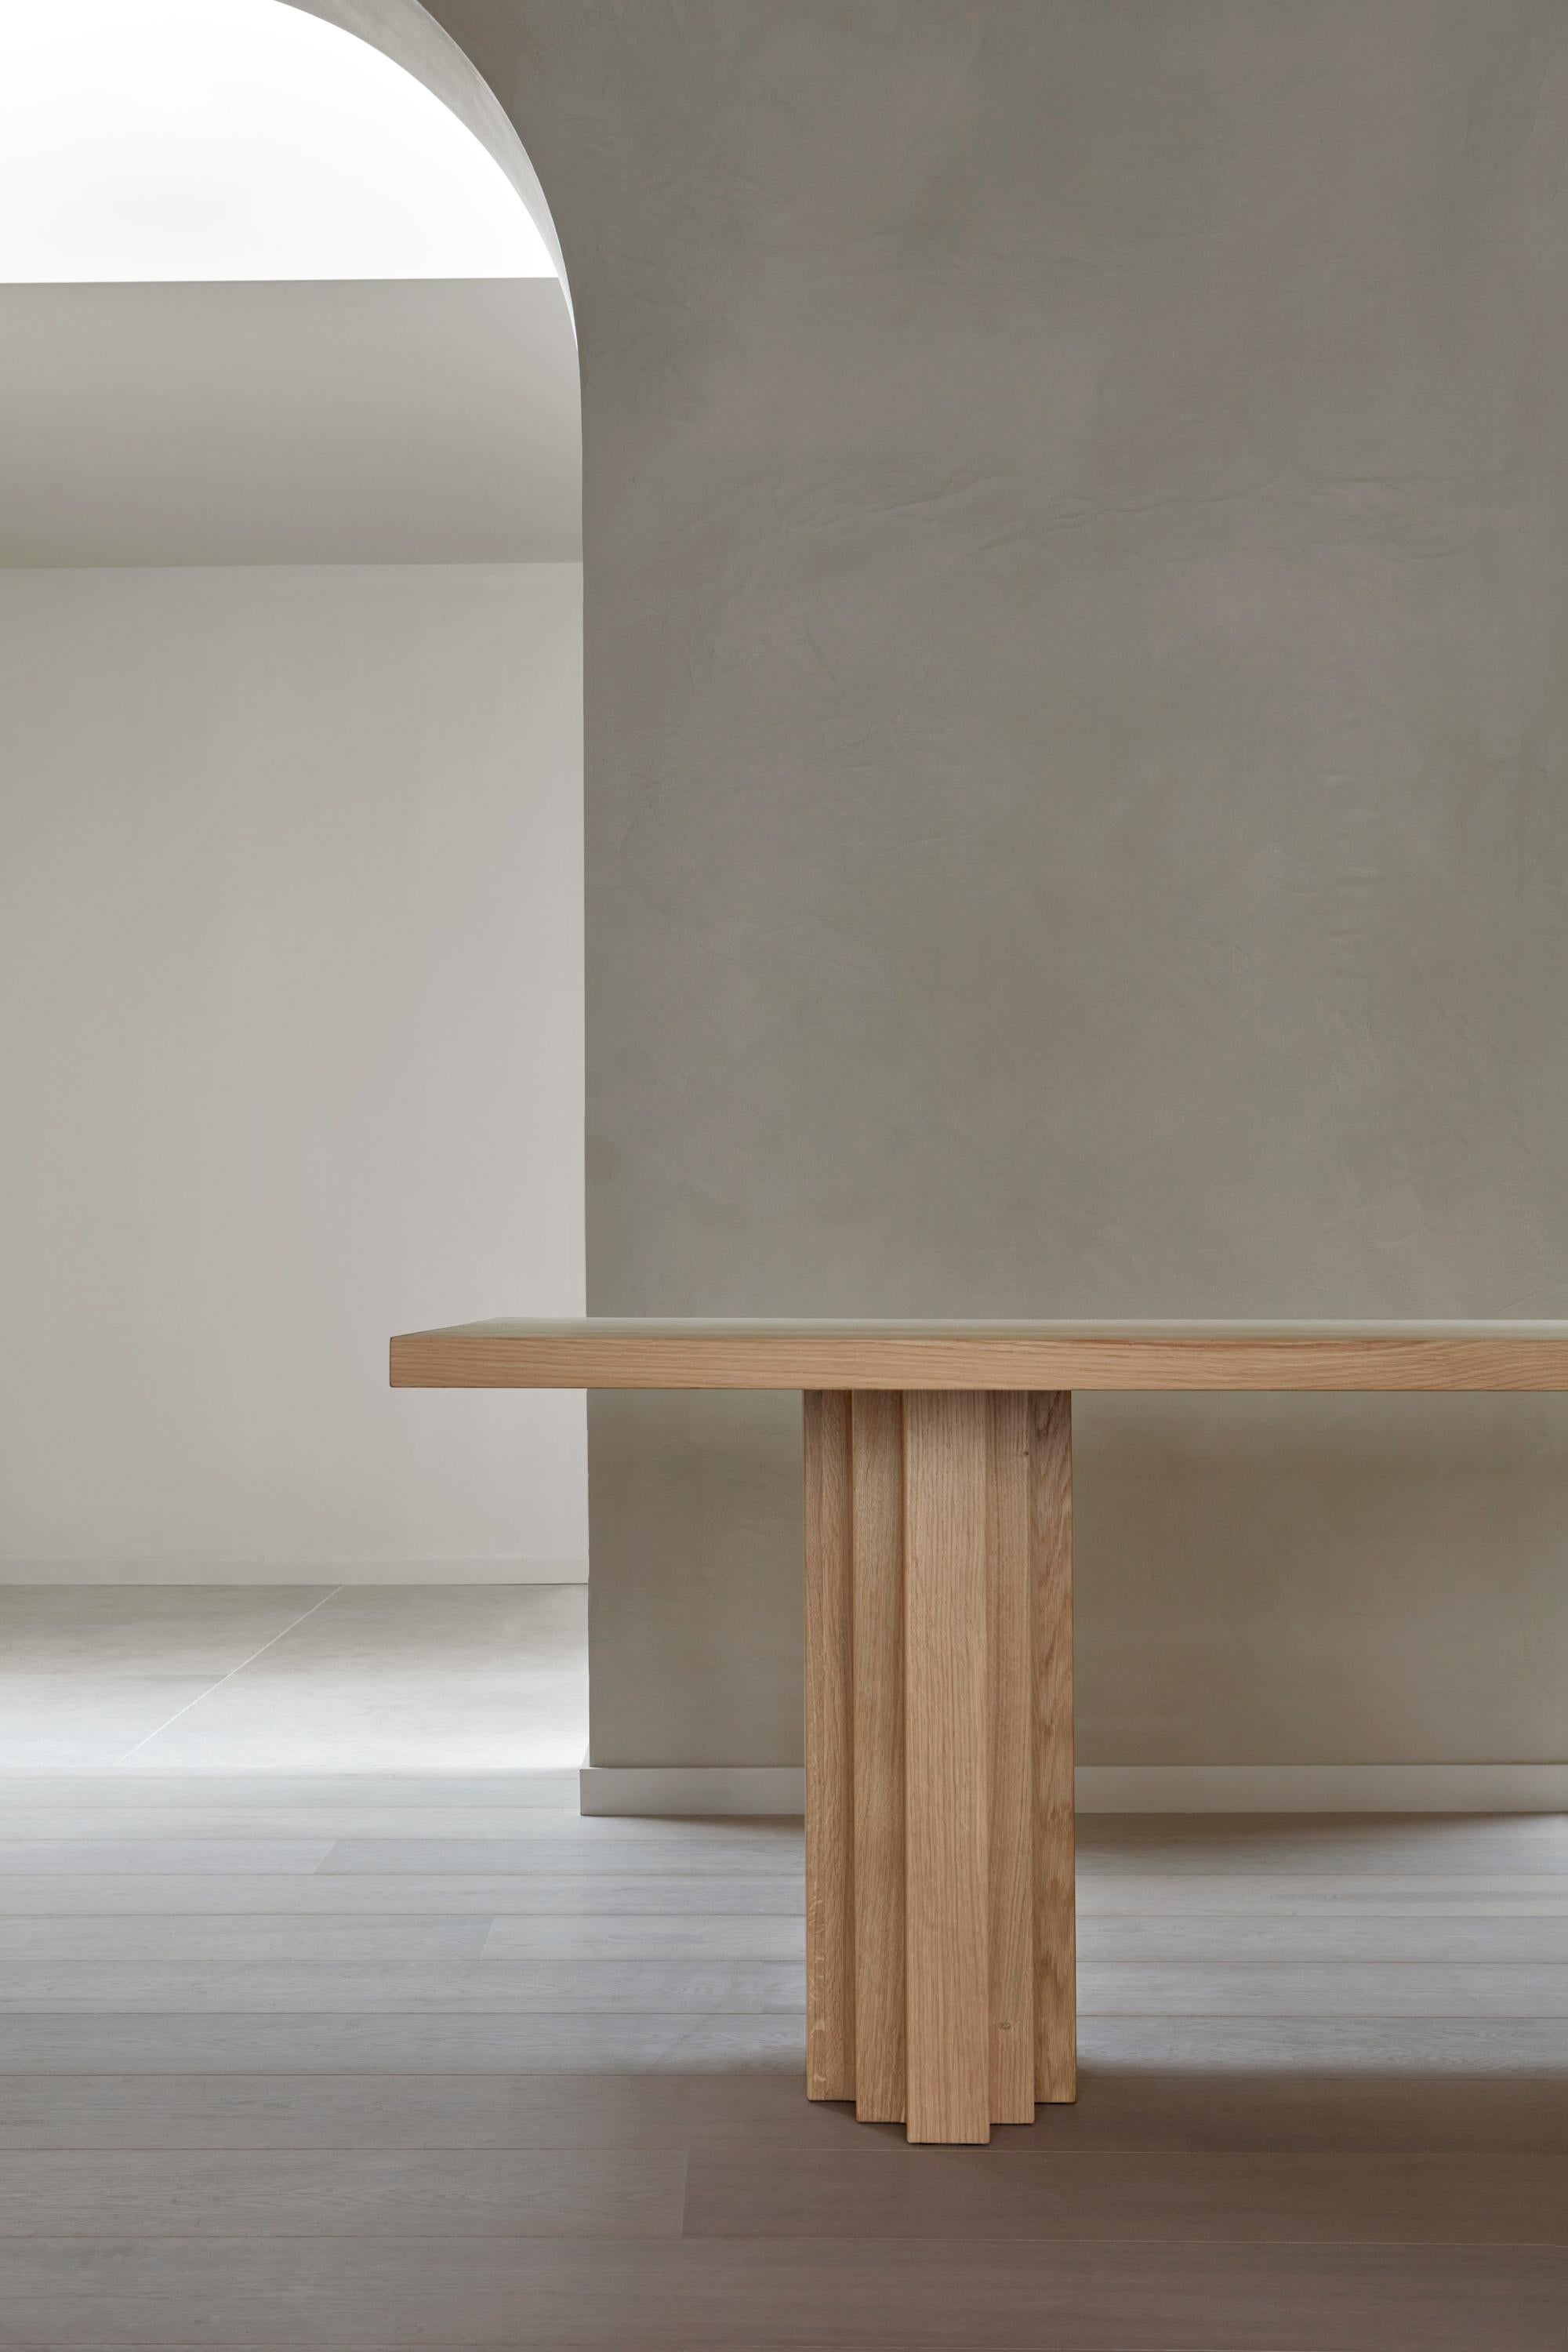 La table Brut Slim s'inspire du brutalisme et de l'architecture de l'école d'Amsterdam. Un banc assorti est disponible. La table est fabriquée sur mesure et entièrement personnalisable.

Mokko est un studio de design basé à Amsterdam qui propose une